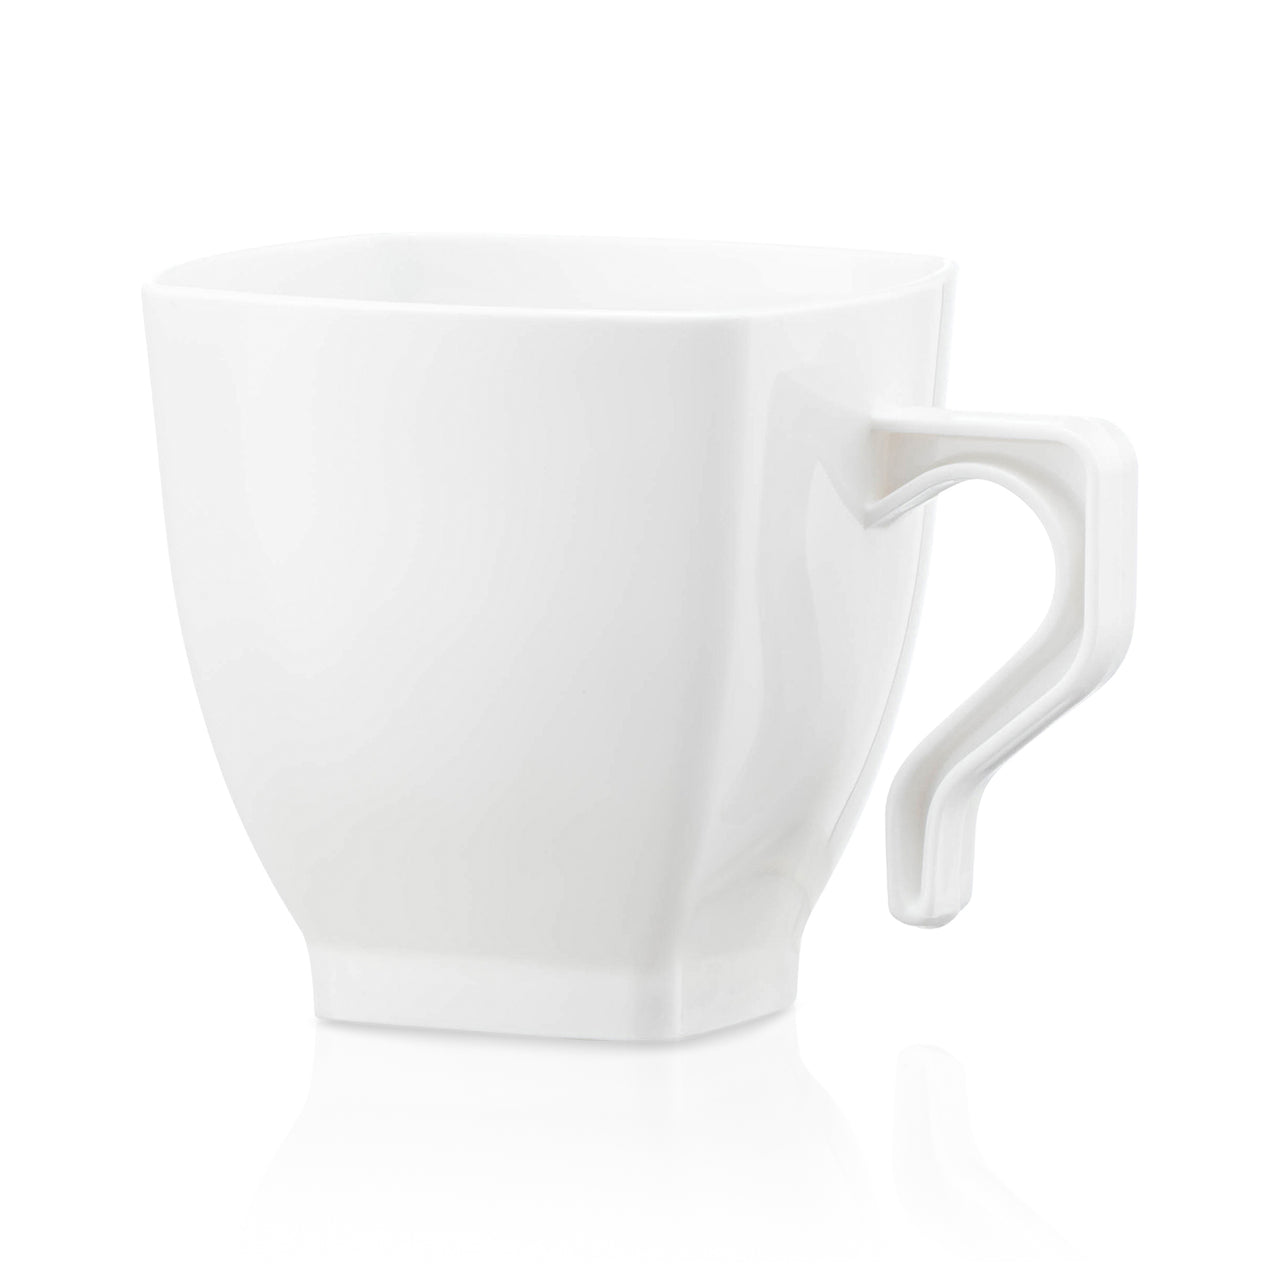 8 oz. White Square Plastic Coffee Mugs